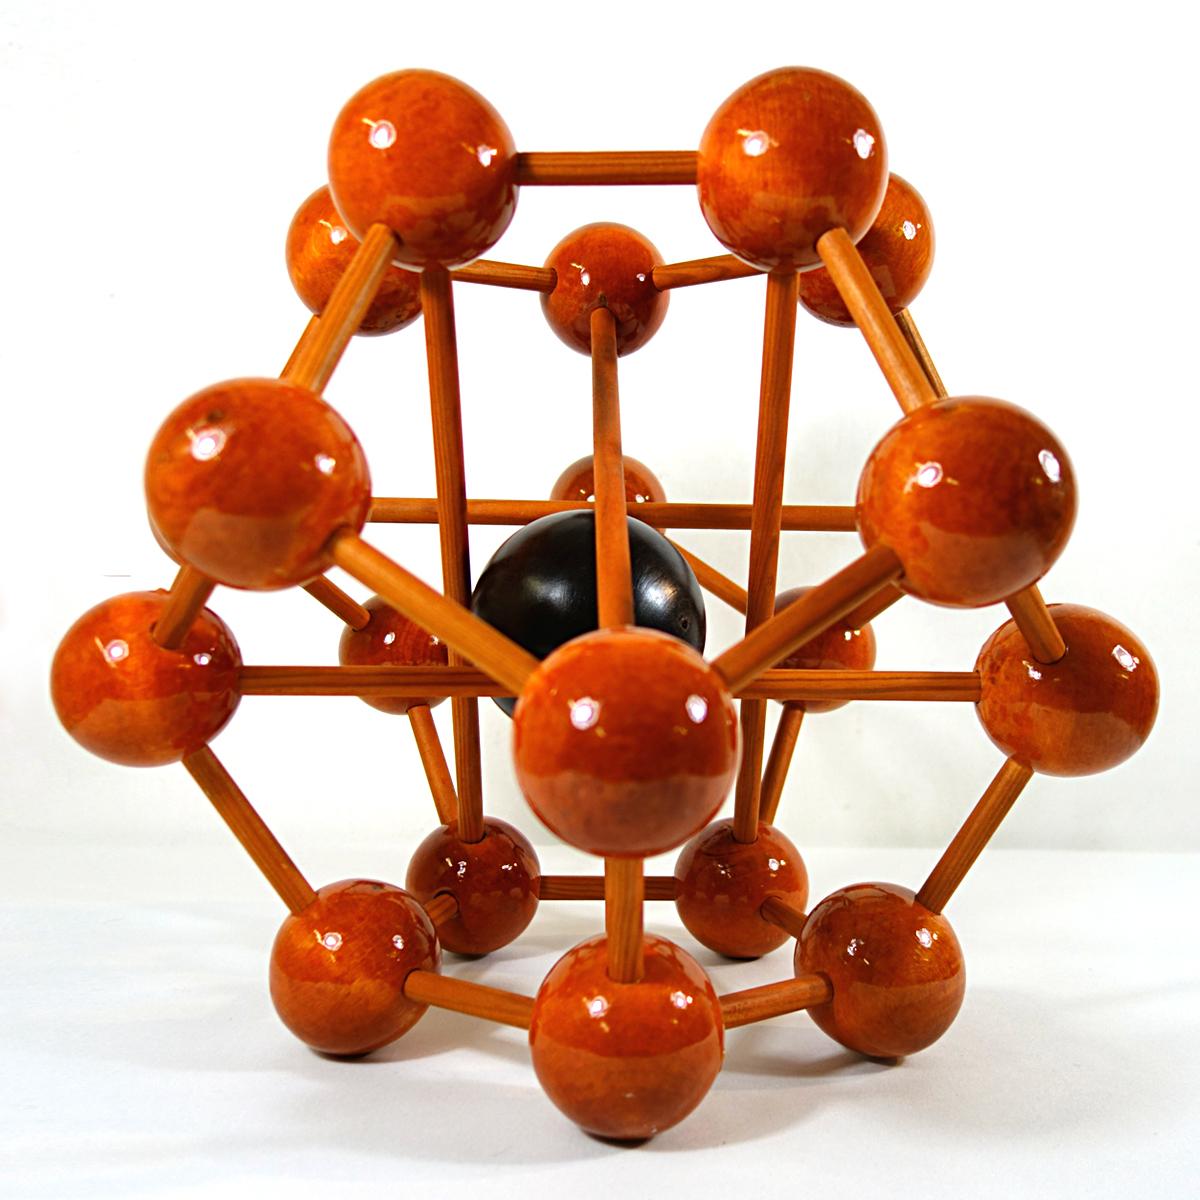 Diese große Miniaturversion eines Atoms enthält 20 Kugeln auf 4 Ebenen, also 5 Kugeln pro Ebene. Sie sind mit Holzstäben verflochten. Im Herzen des Atoms befindet sich eine größere, bewegliche Kugel aus einer dunkleren Holzart.
Dieses Atom aus der